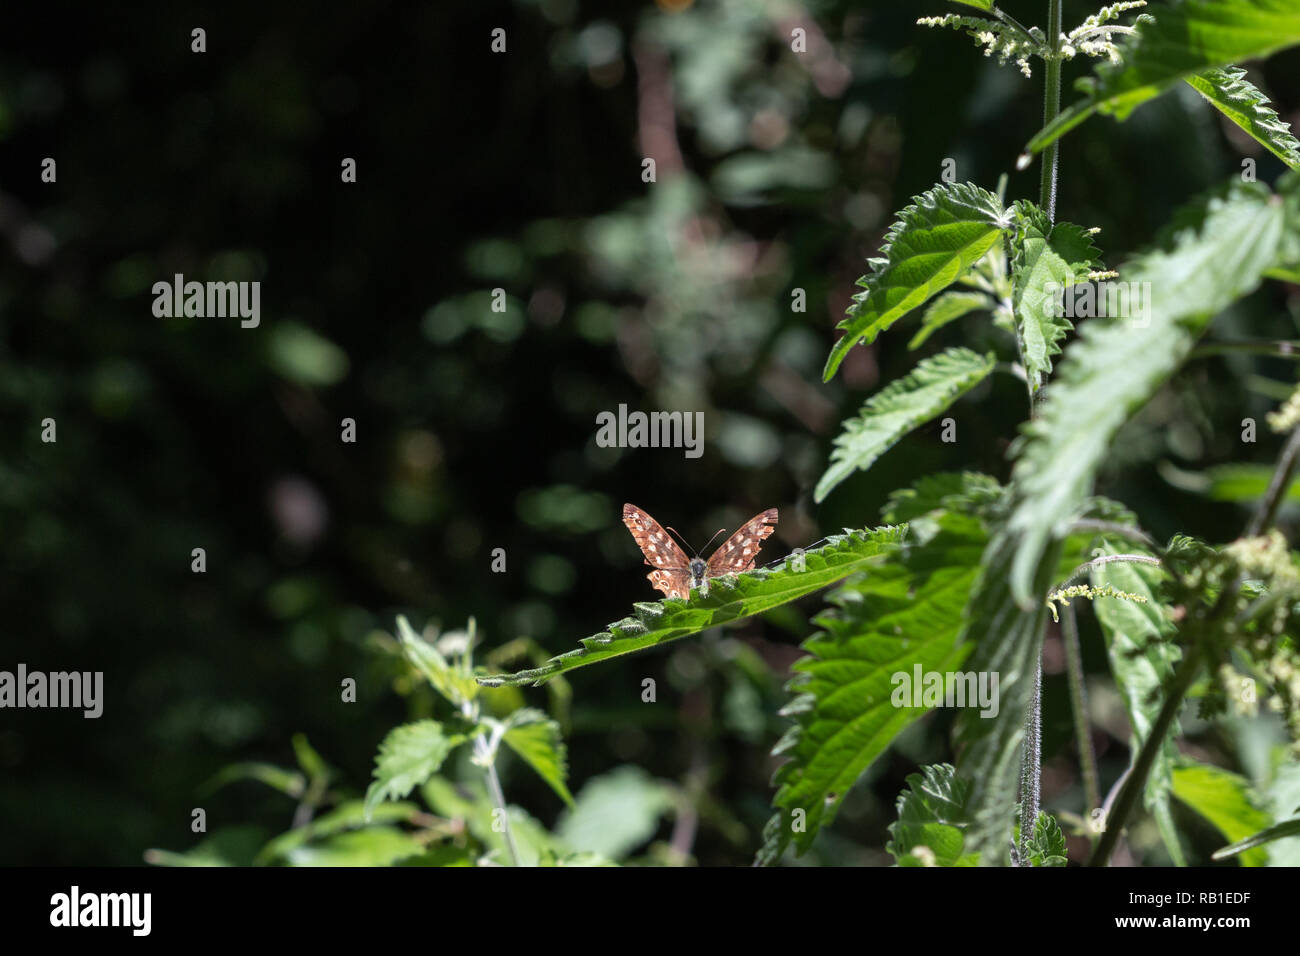 Punteggiate di farfalle di legno appoggiata su una foglia in un bosco Foto Stock